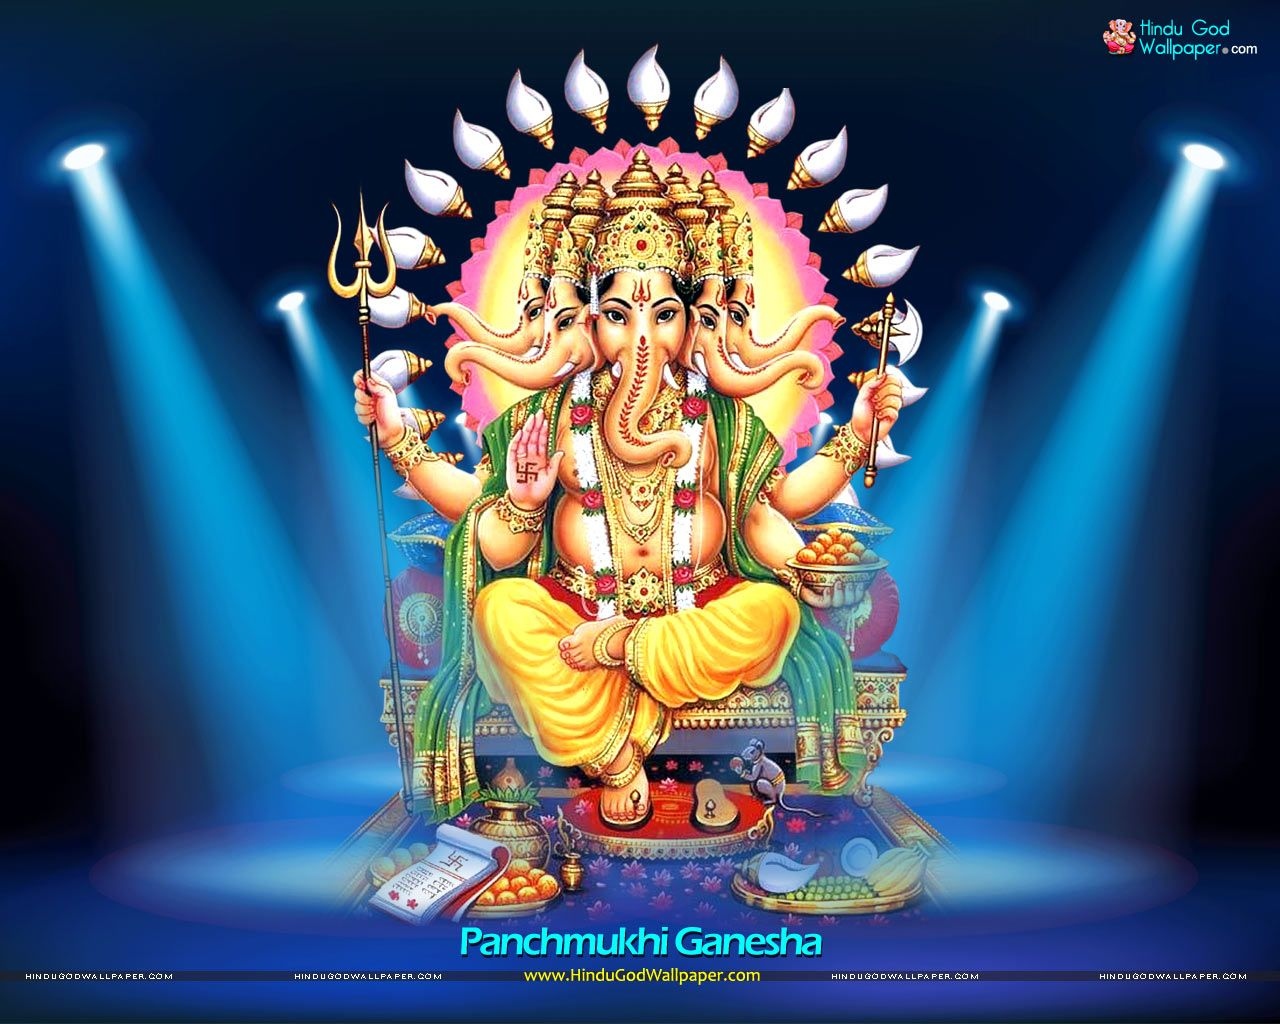 God Ganesh - Panchmukhi Ganesh